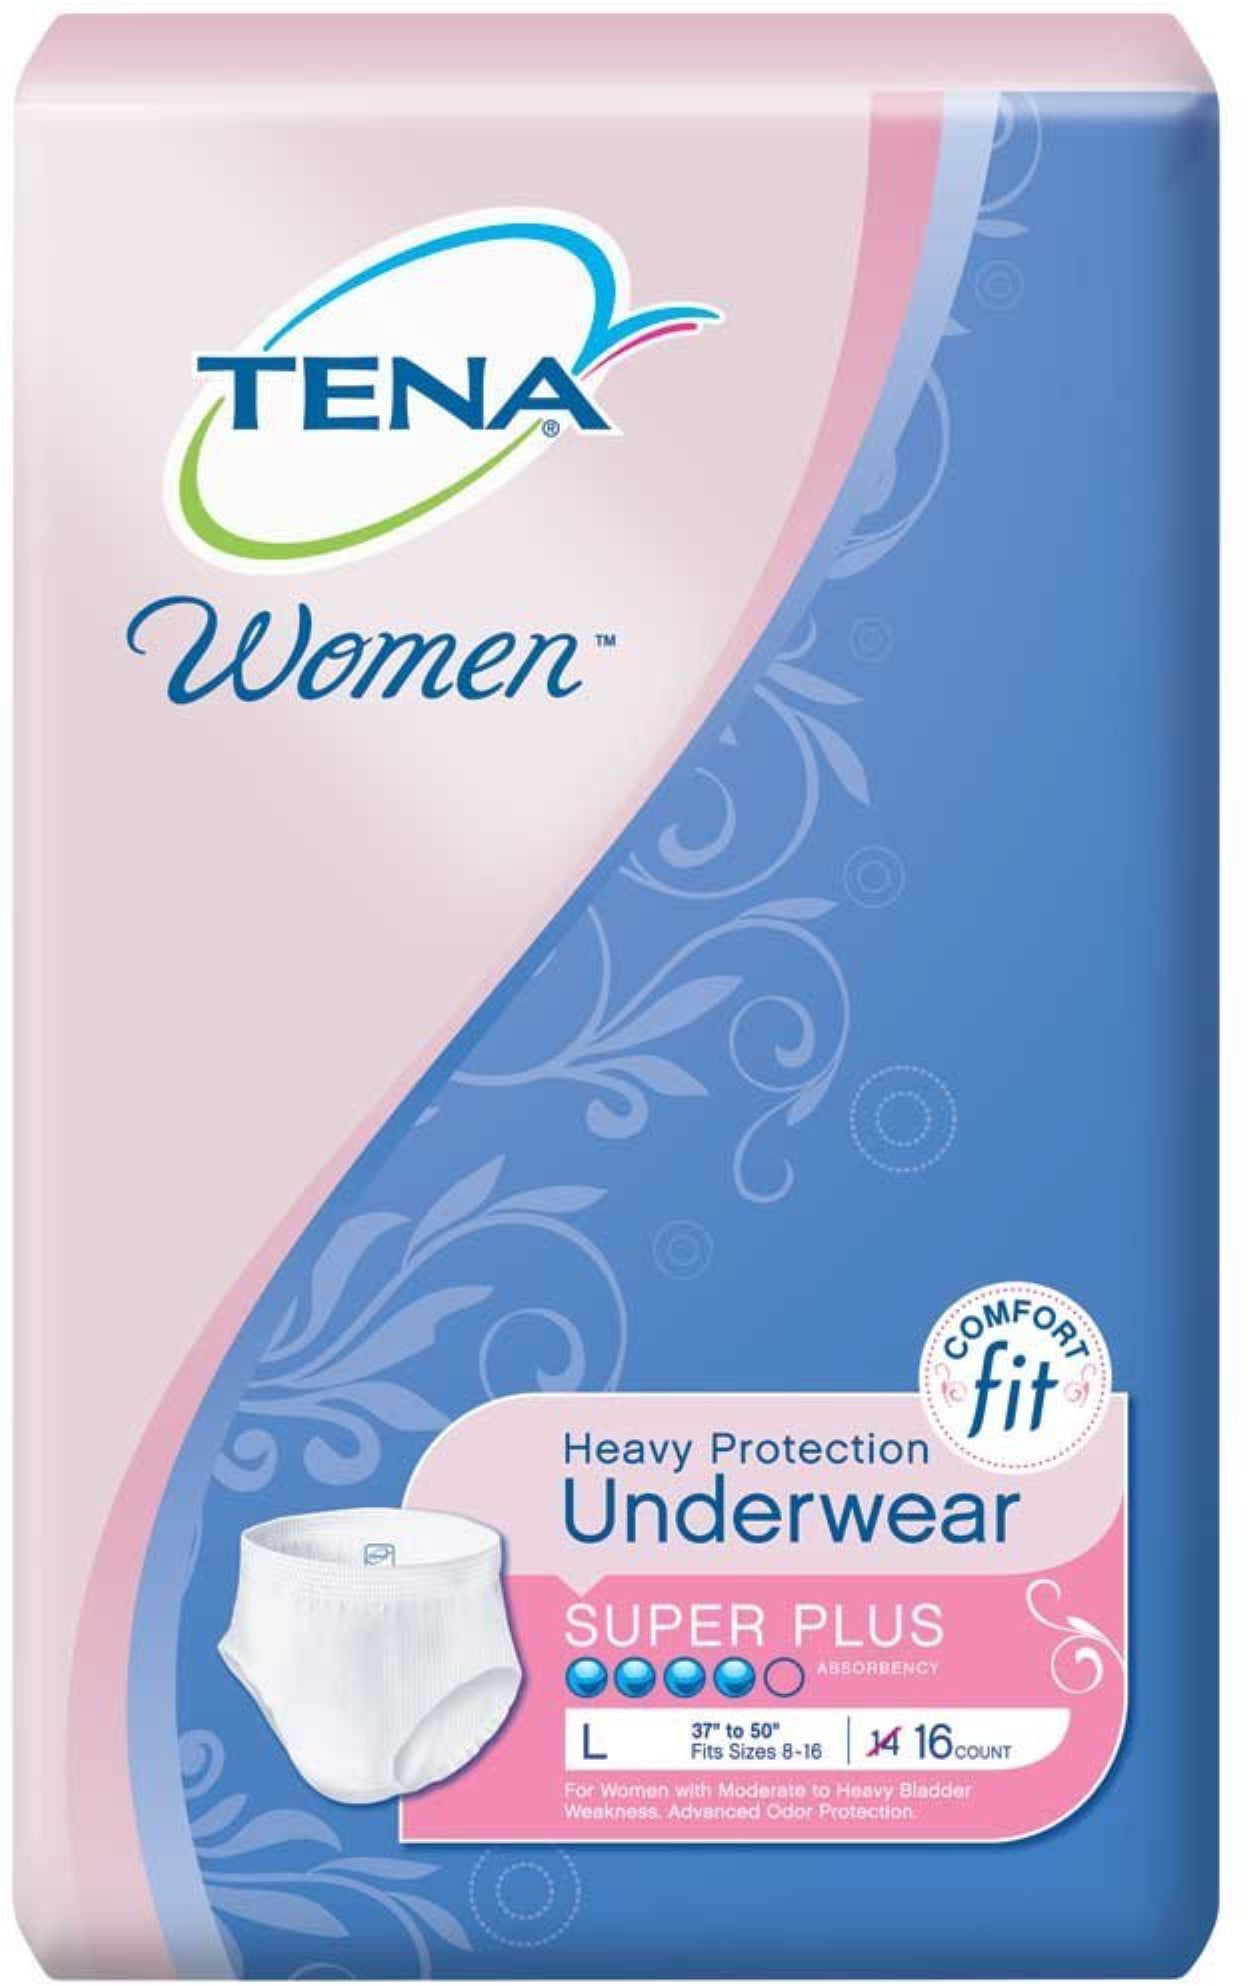 incontinence underwear protective tena briefs walmart pack